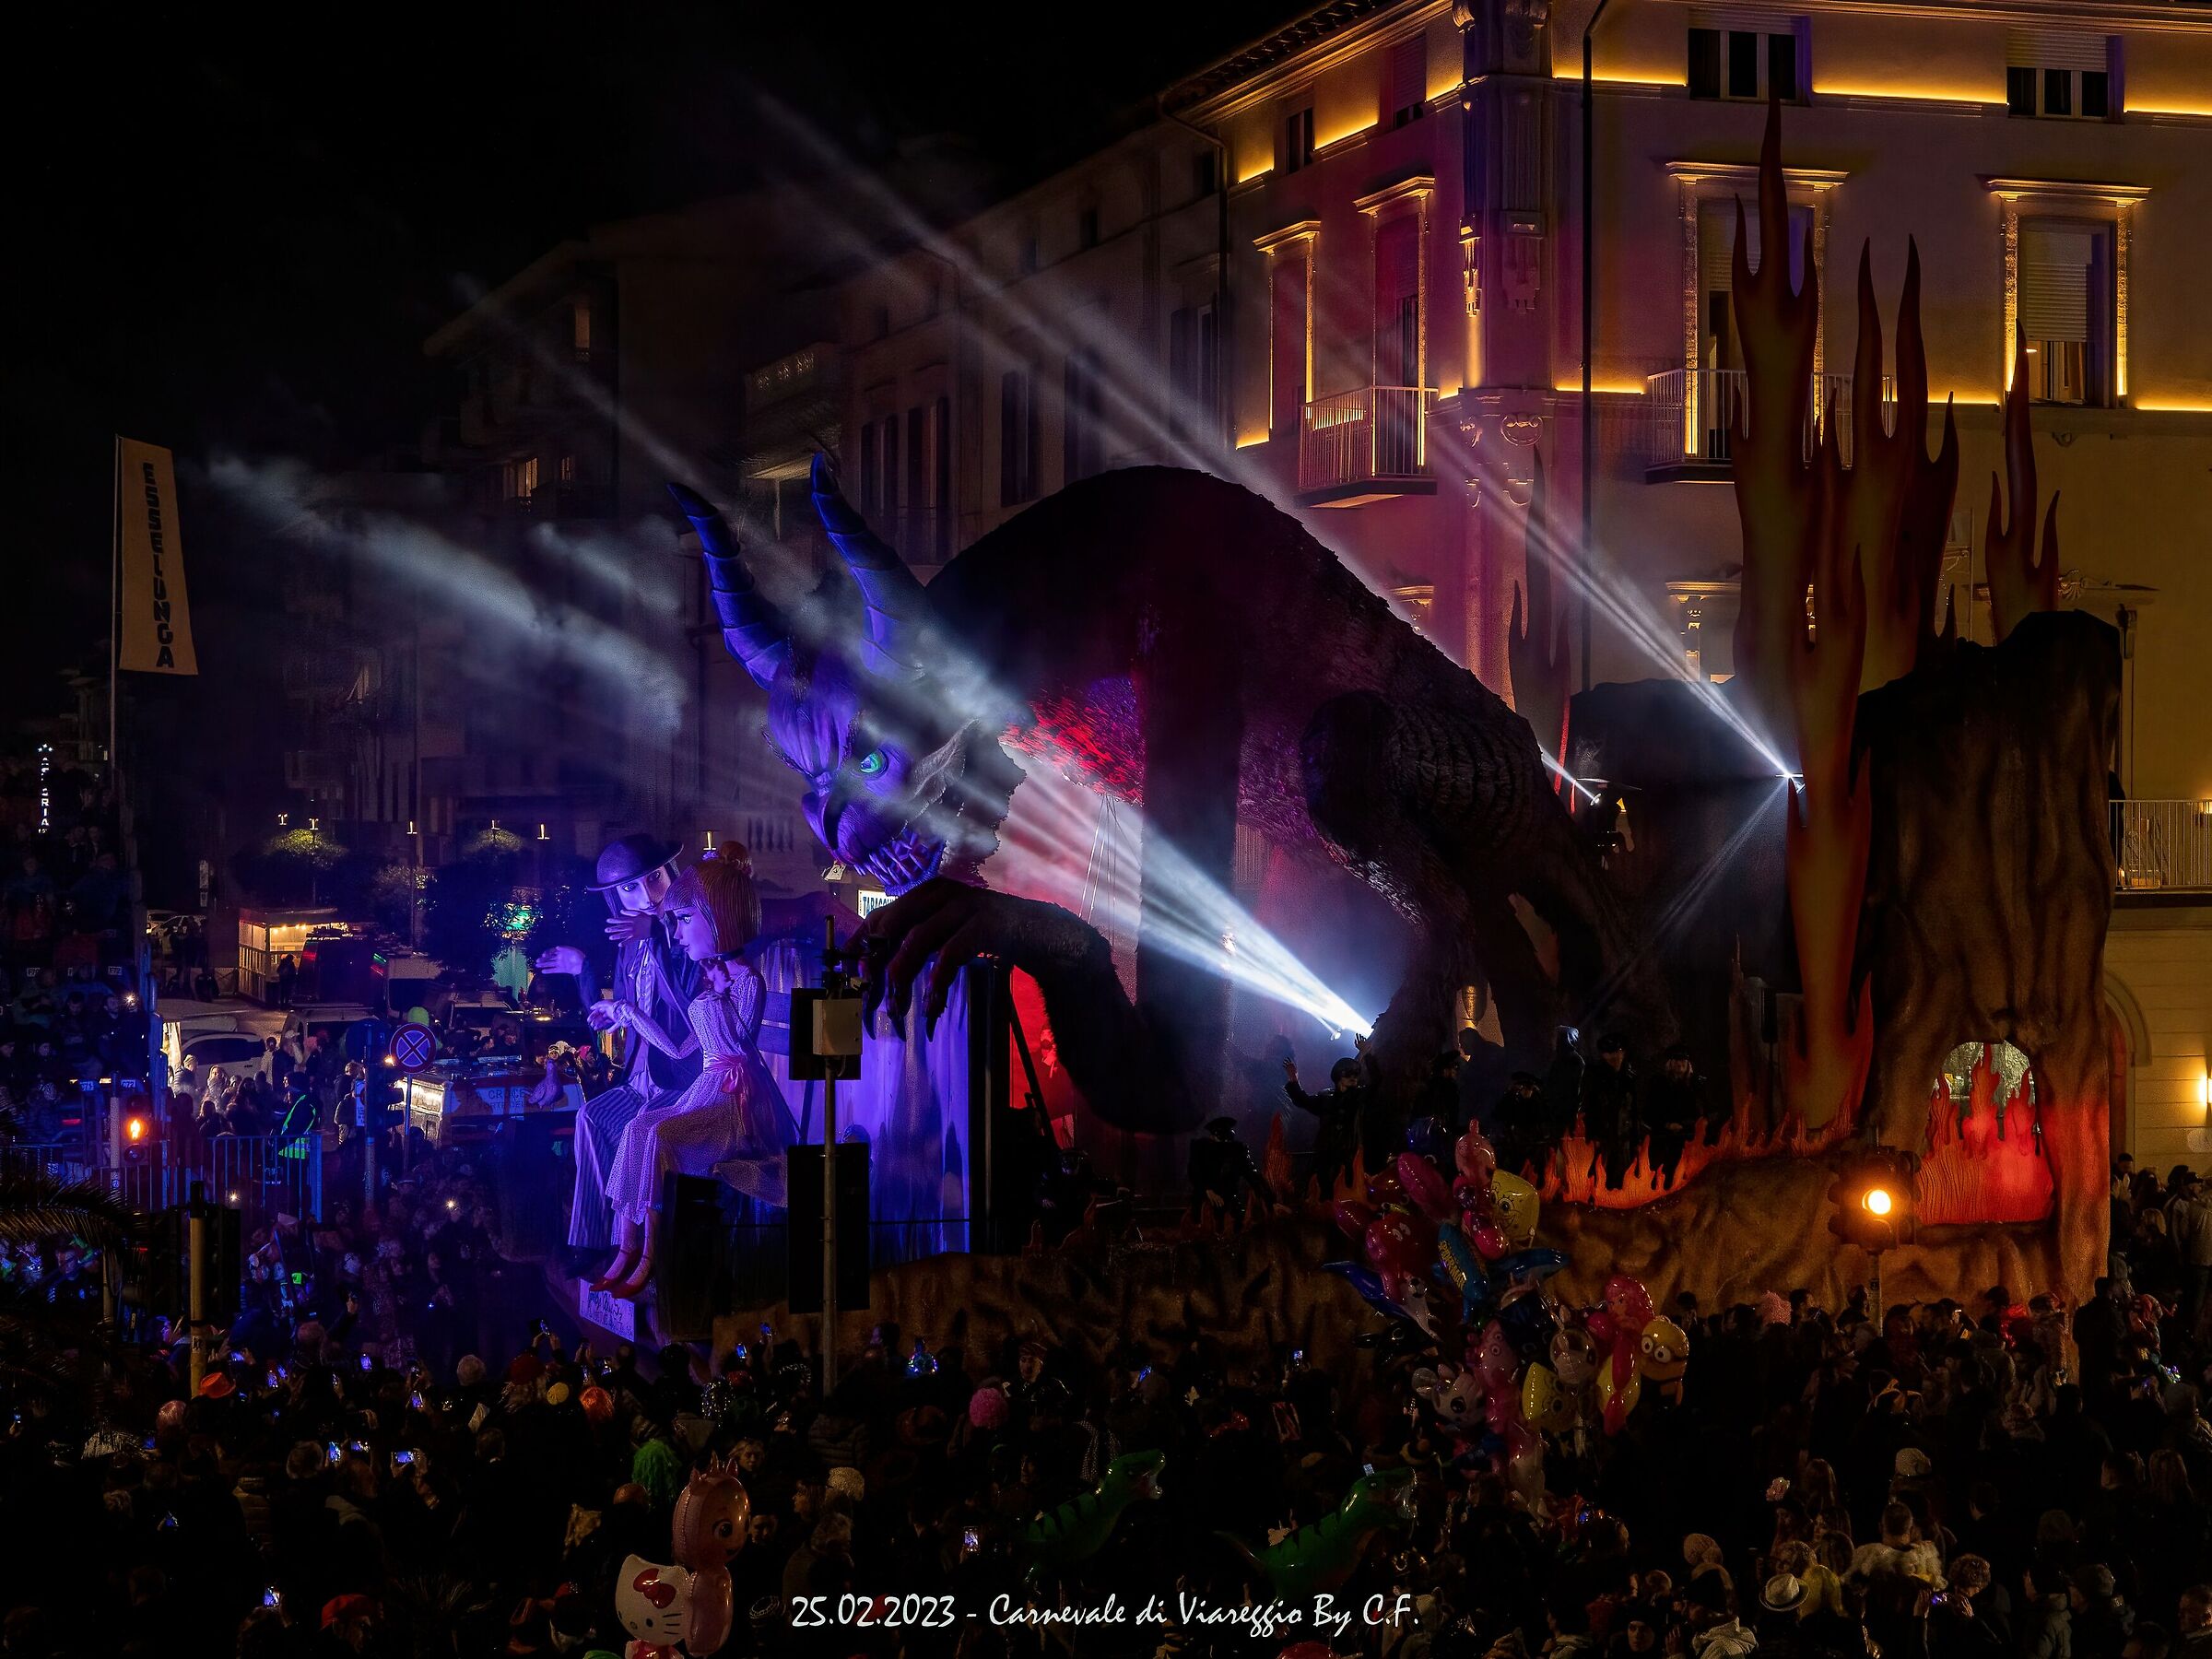 Carnevale di Viareggio 2023...